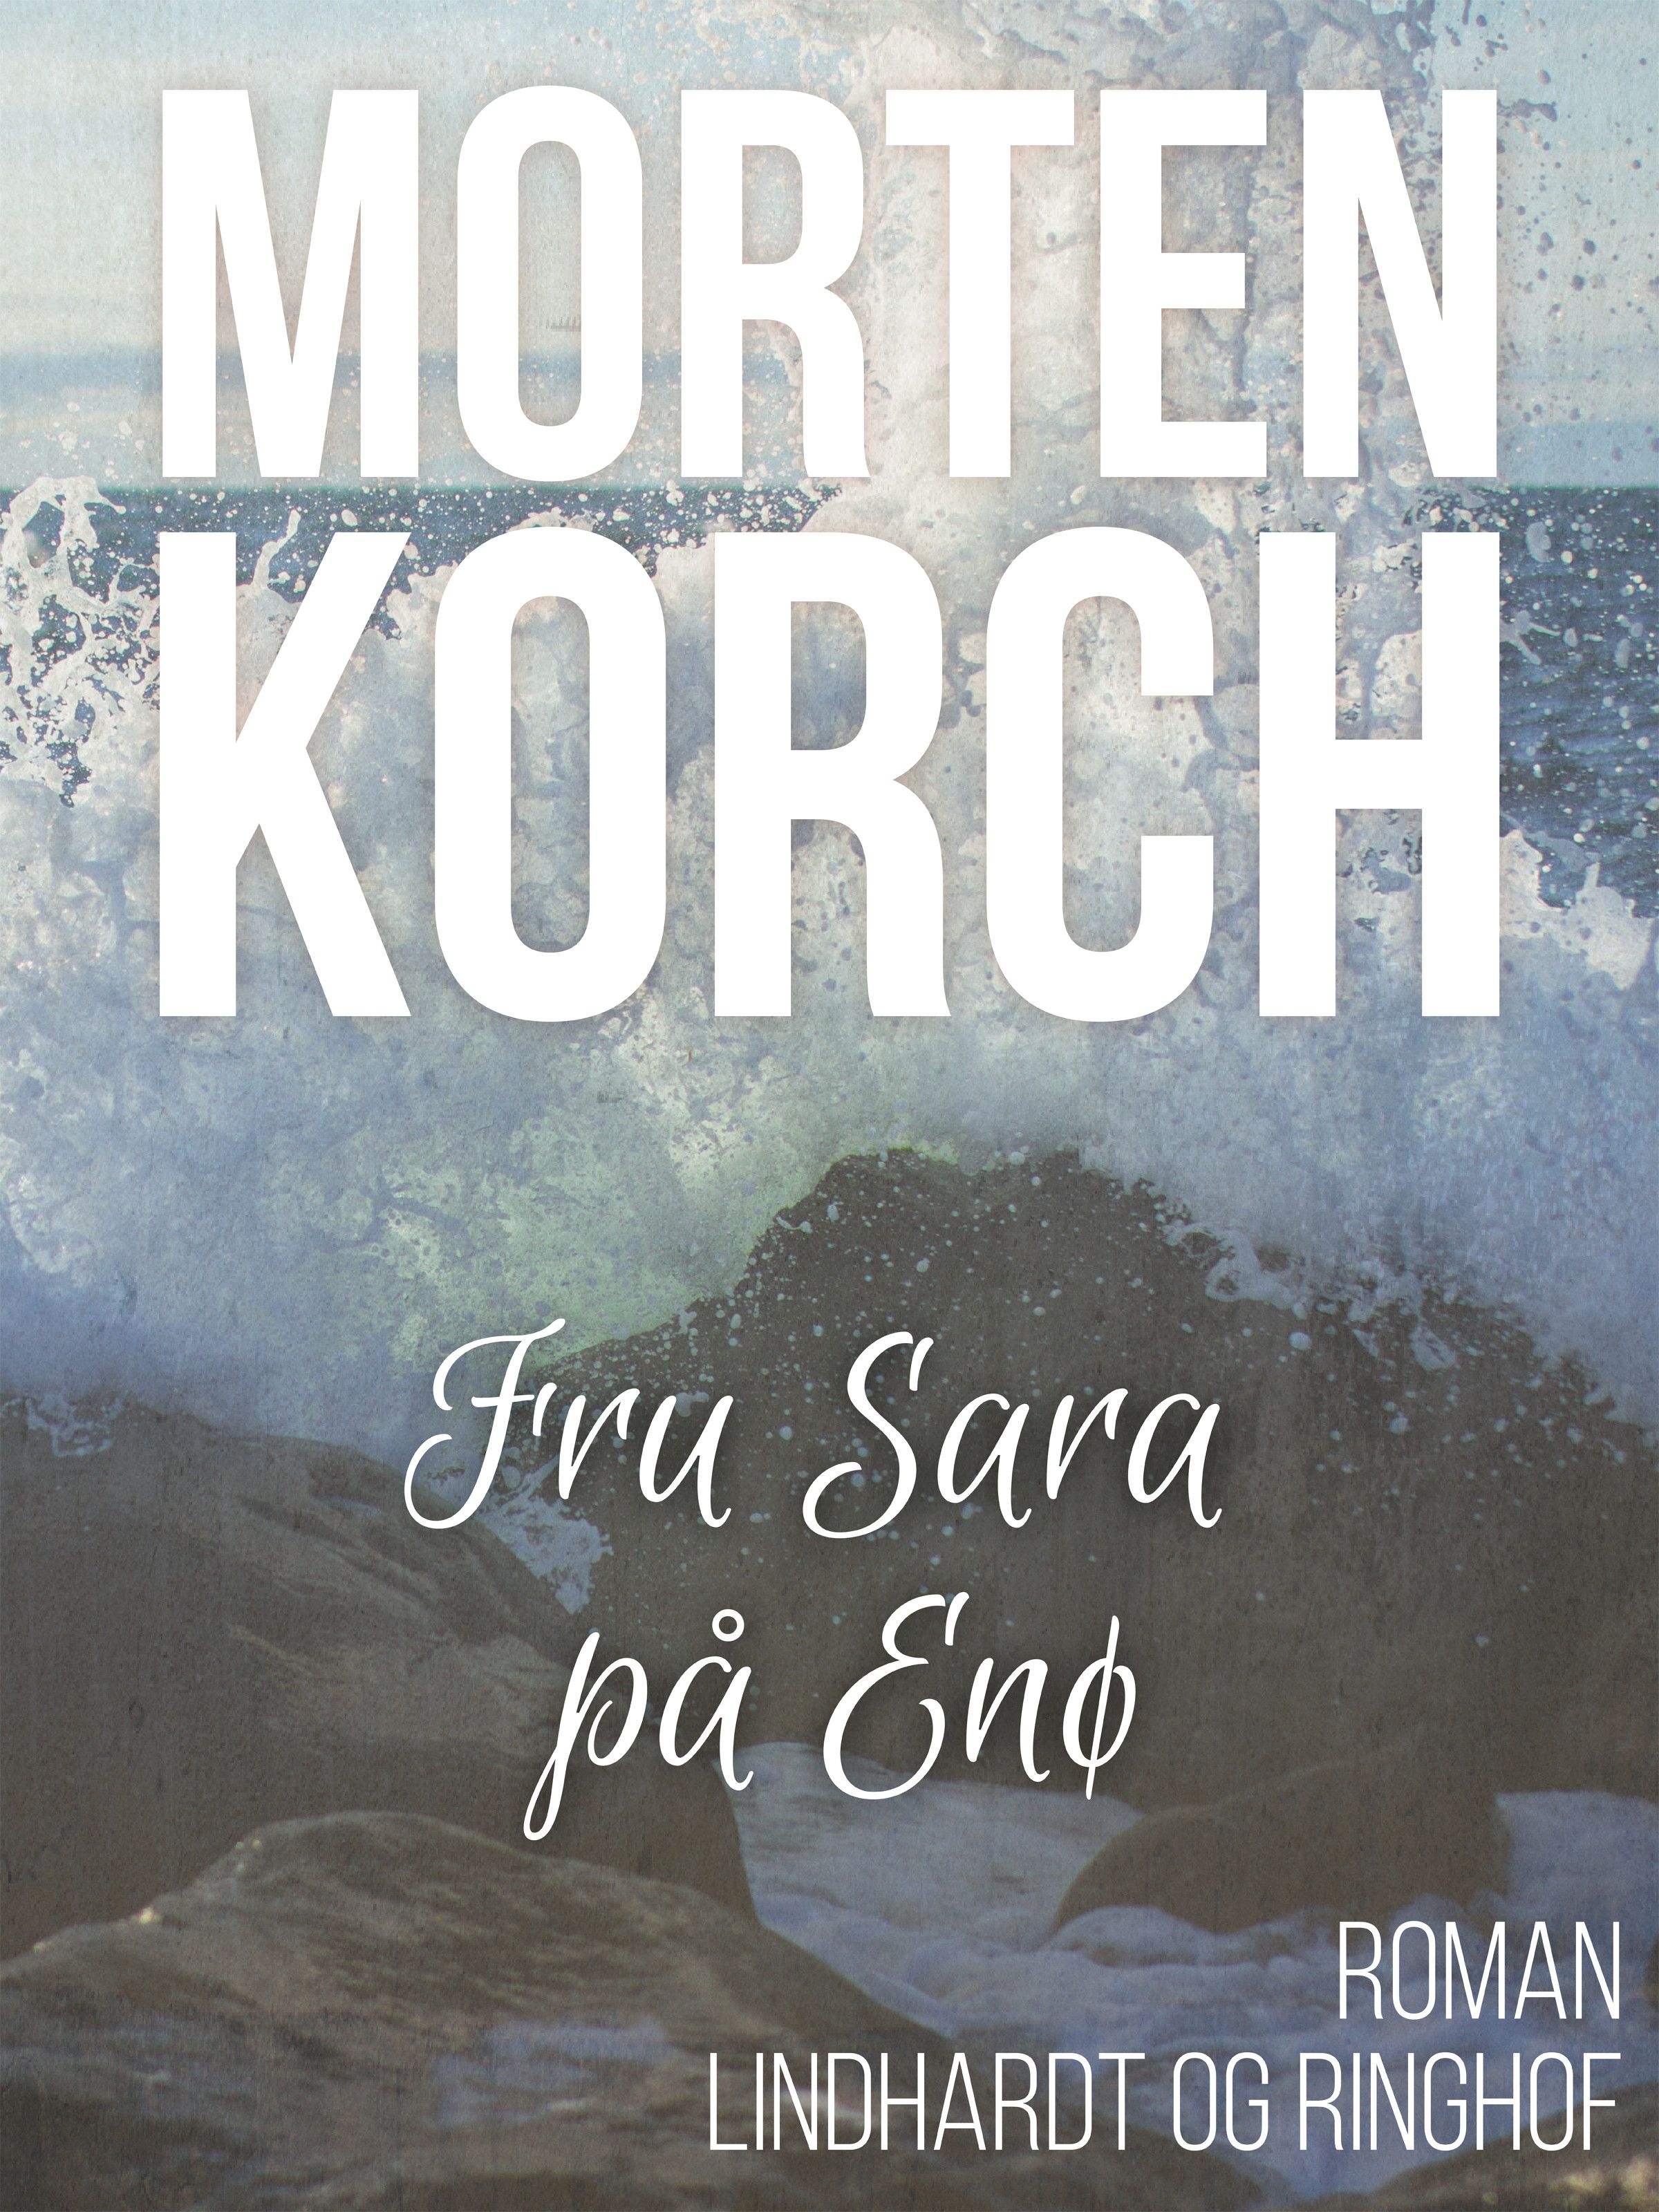 Fru Sara på Enø, lydbog af Morten Korch